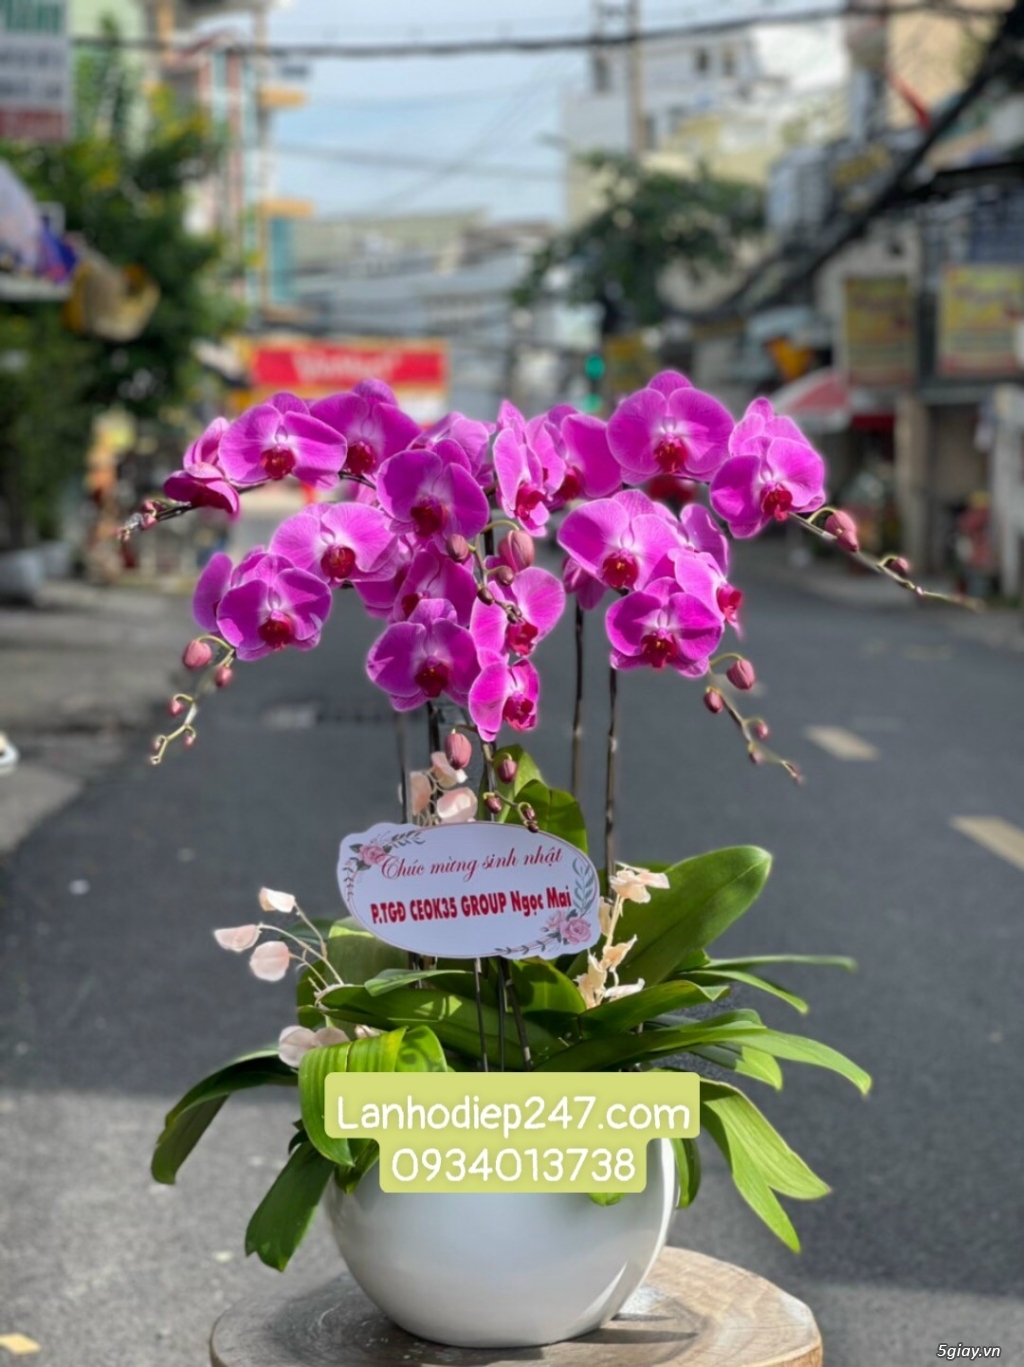 Shop hoa tươi Lan Hồ Điệp 247 tại Quy Nhơn 0934013738 - 12